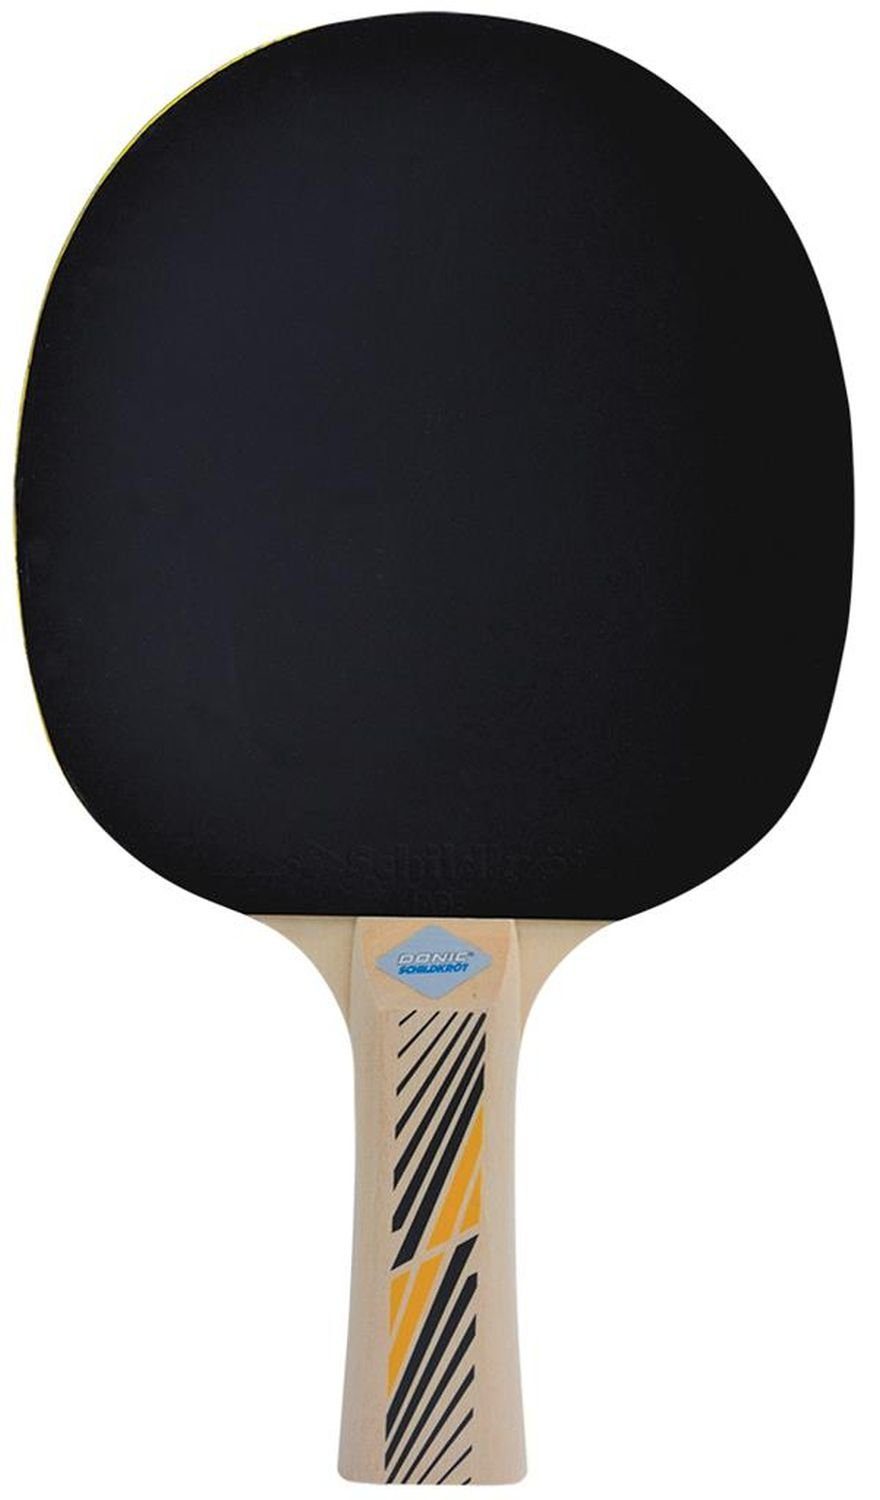 300, Legends Racket Table Bat Tischtennisschläger Donic-Schildkröt Schläger Tischtennis Tennis